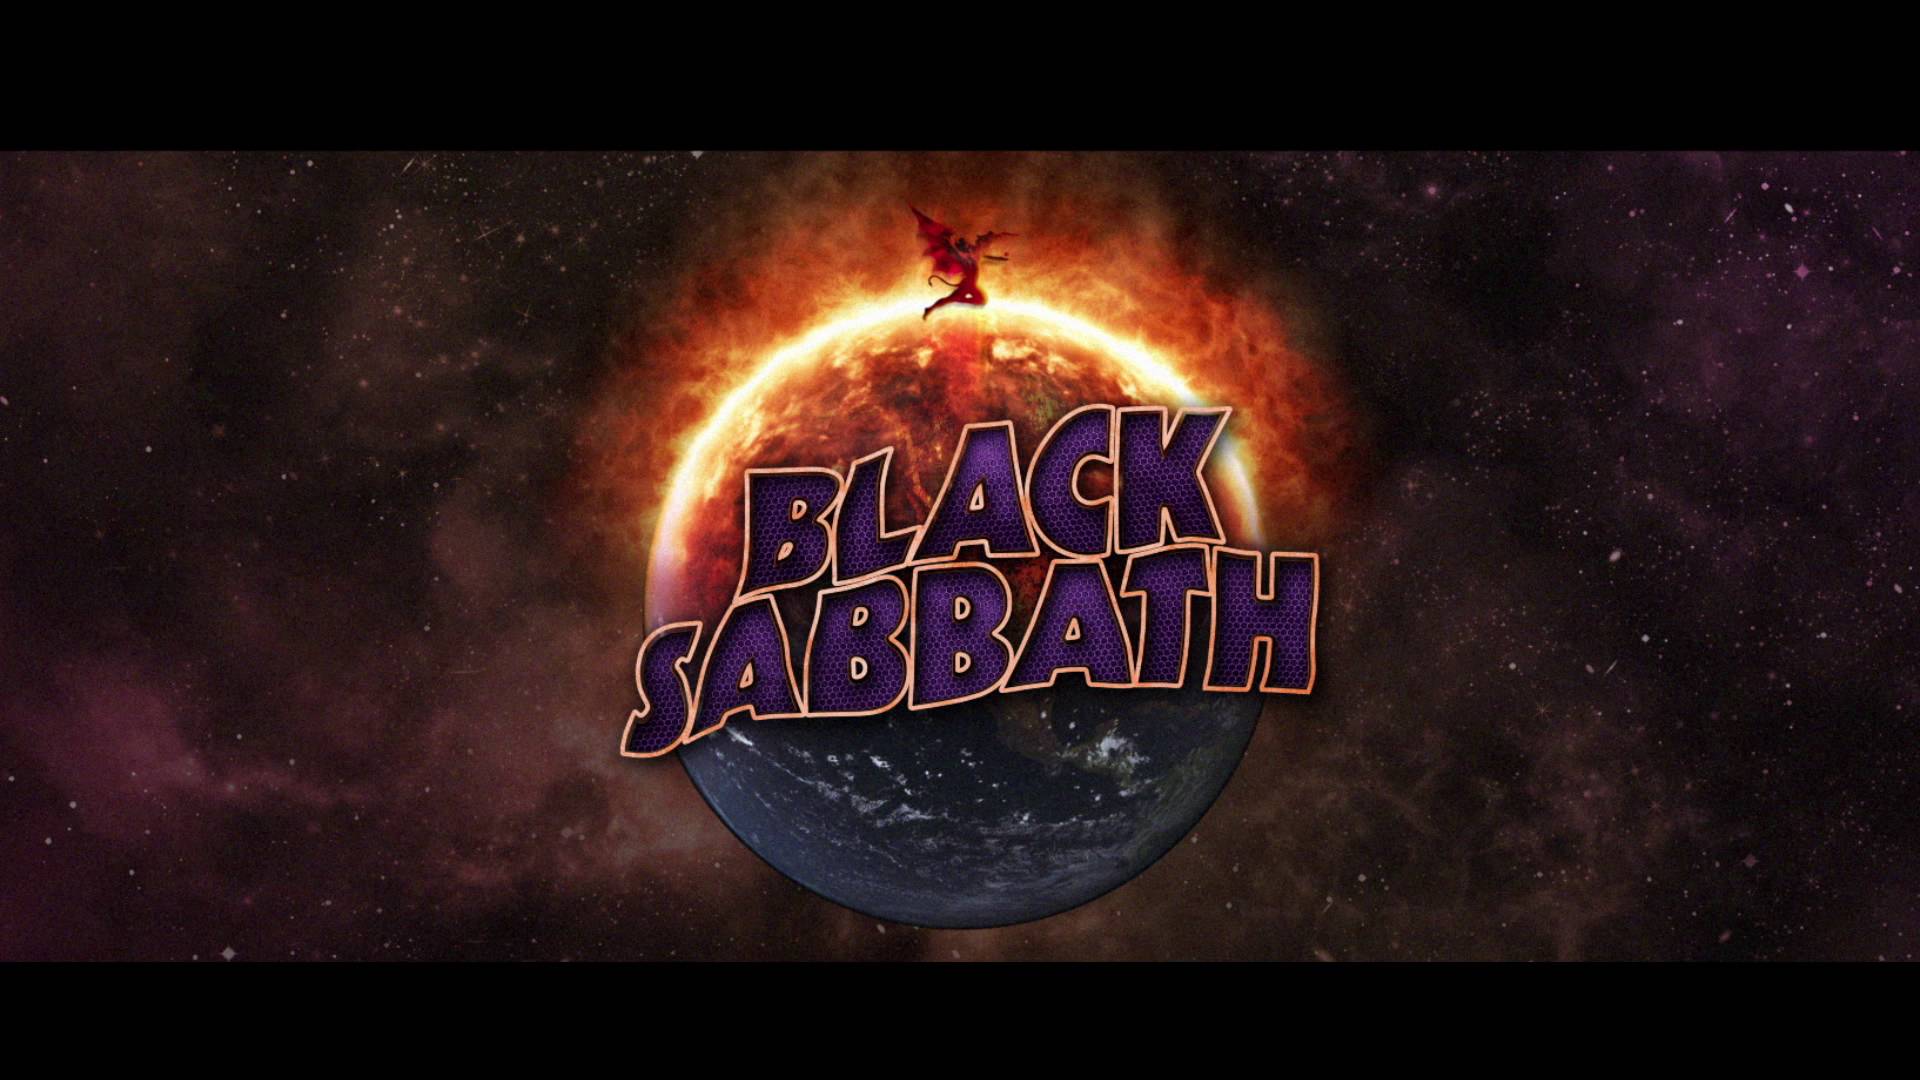 Black Sabbath End Limited Edition Tour CD Commercial